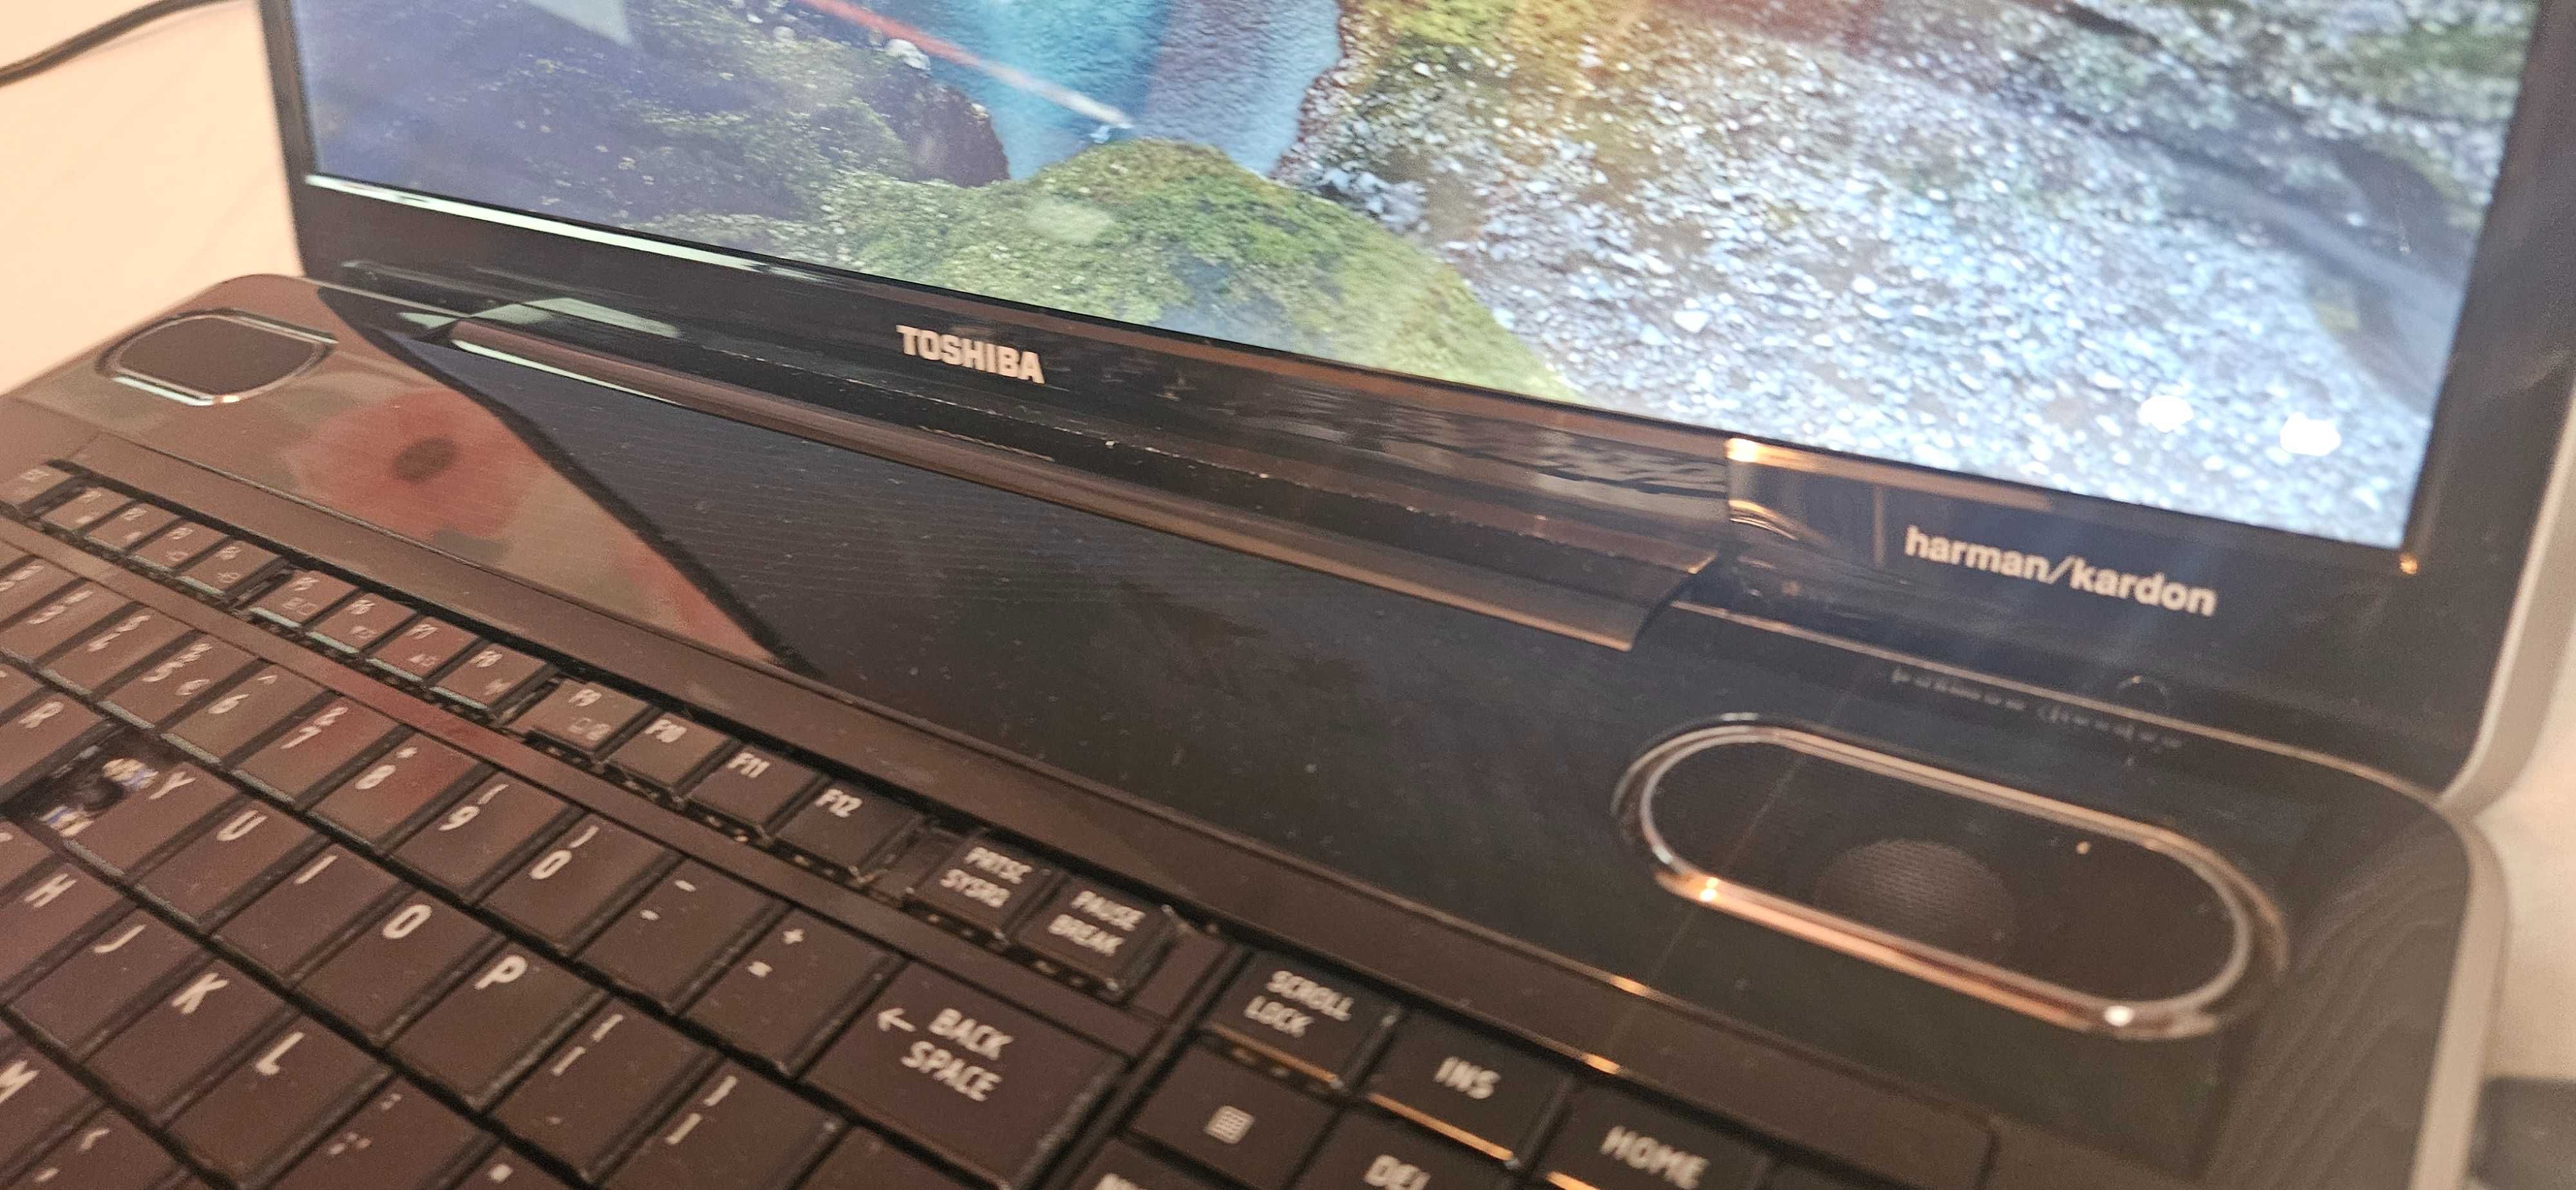 Laptop Toshiba Satellite P500-177 sprawny